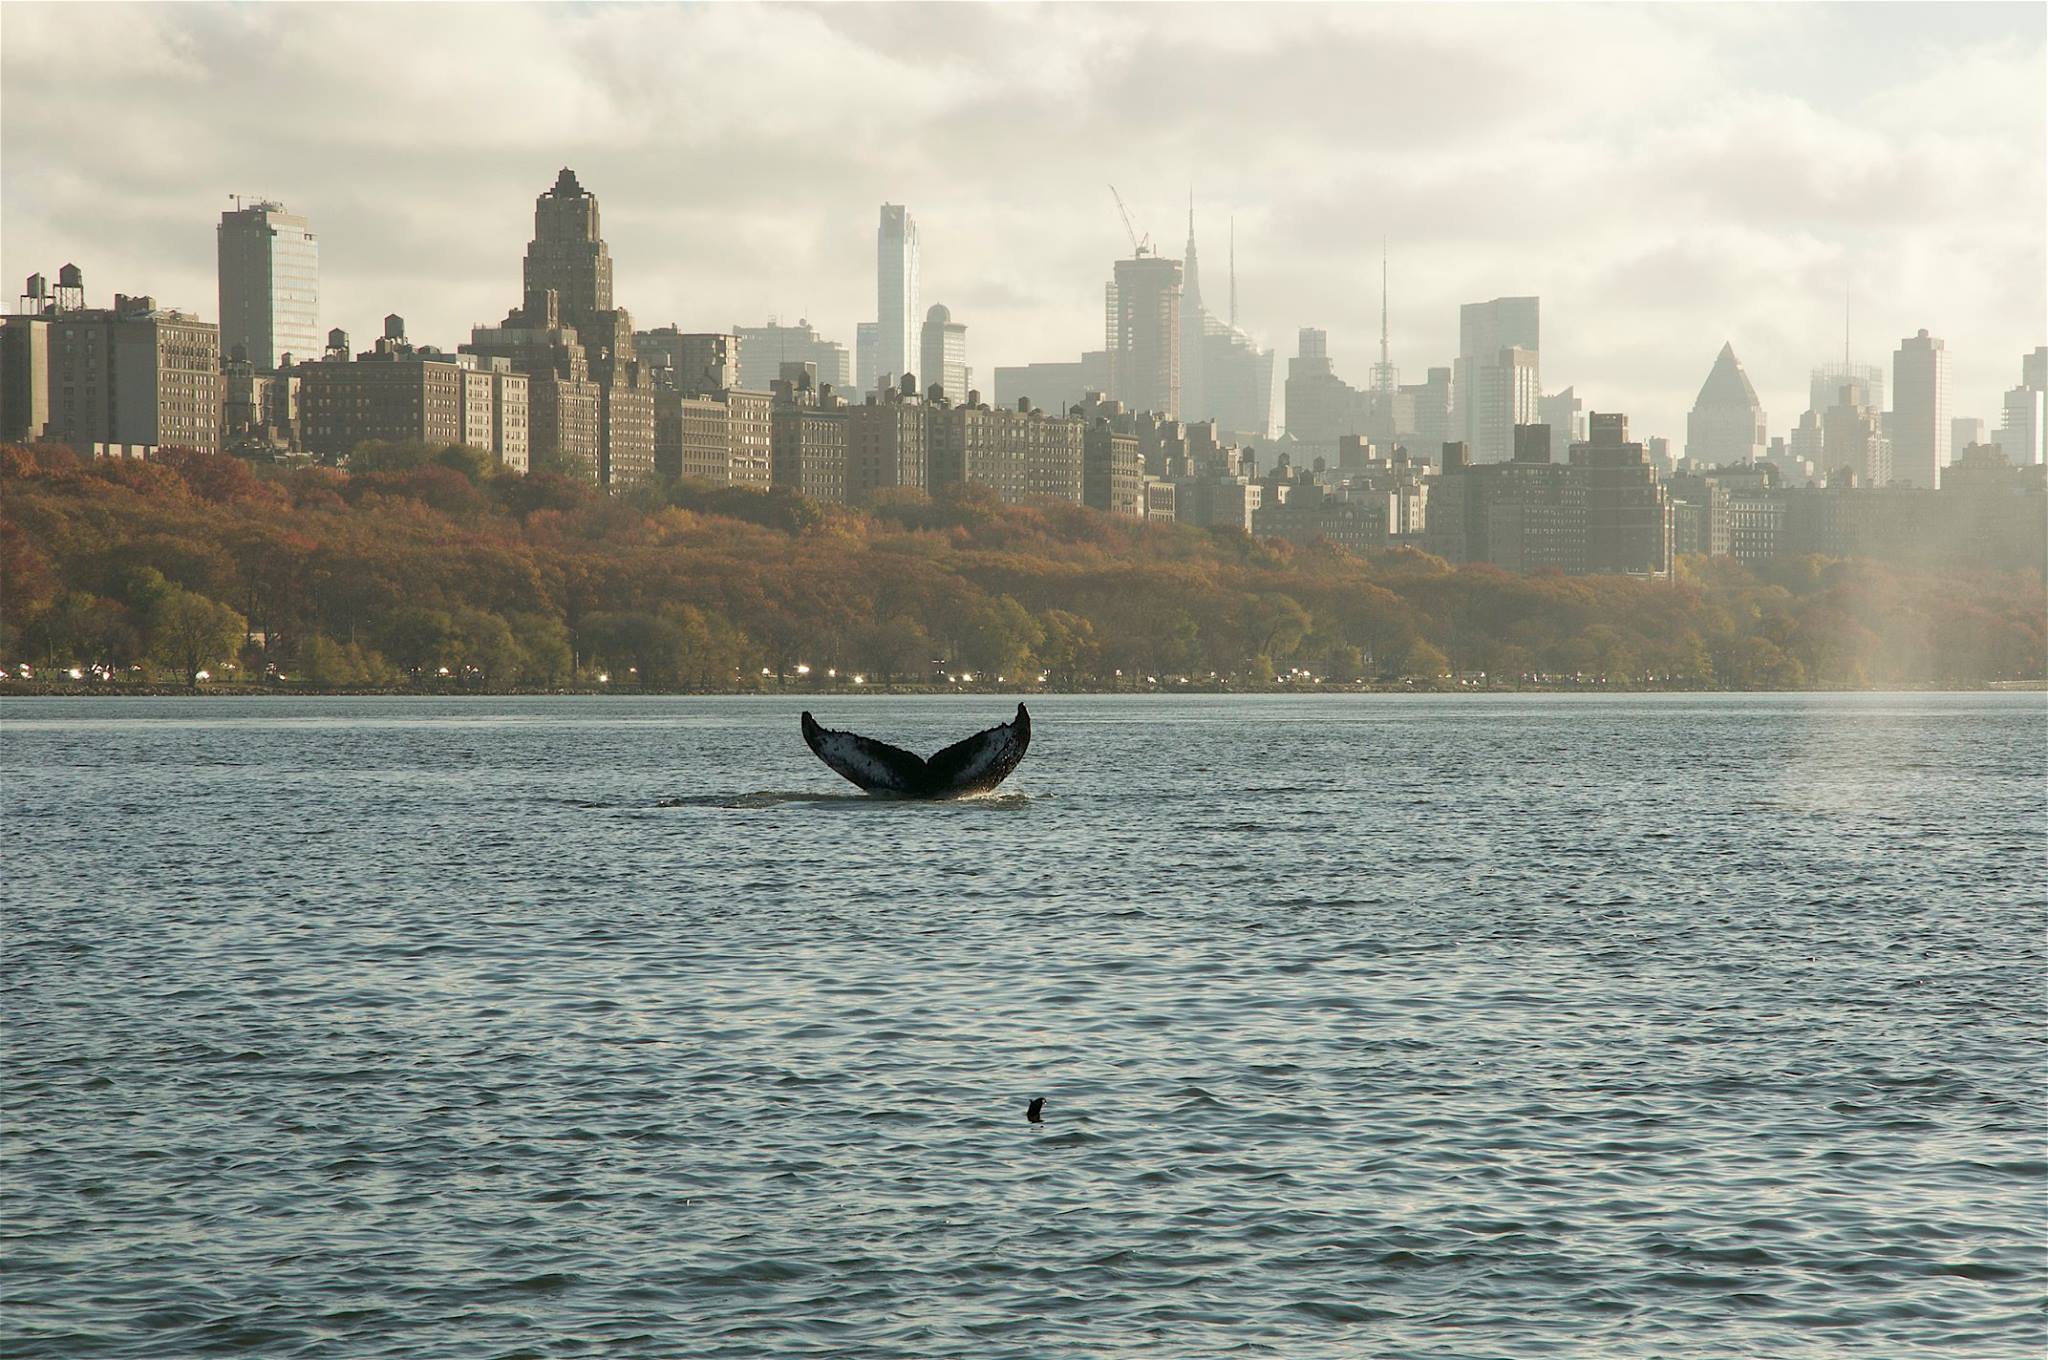 Humpback whale in New York (November 2016)